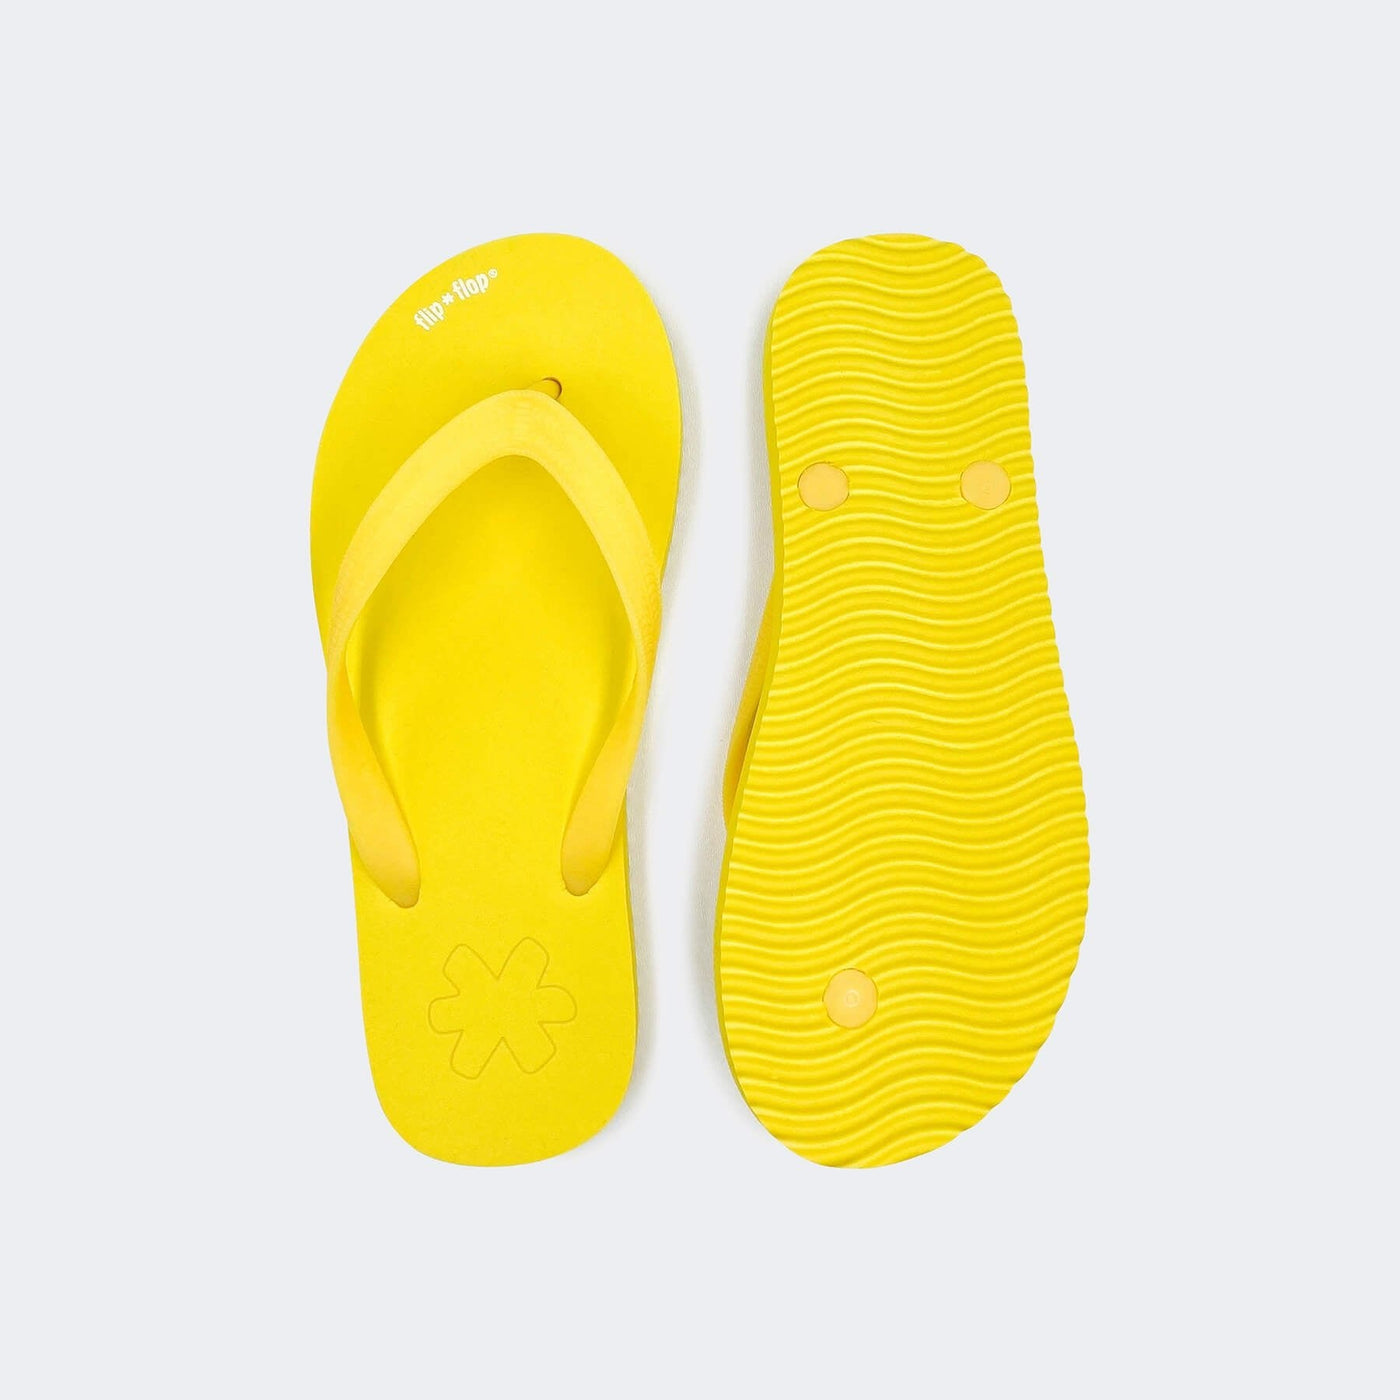 flip*flop originals yellow/gelb, detail1